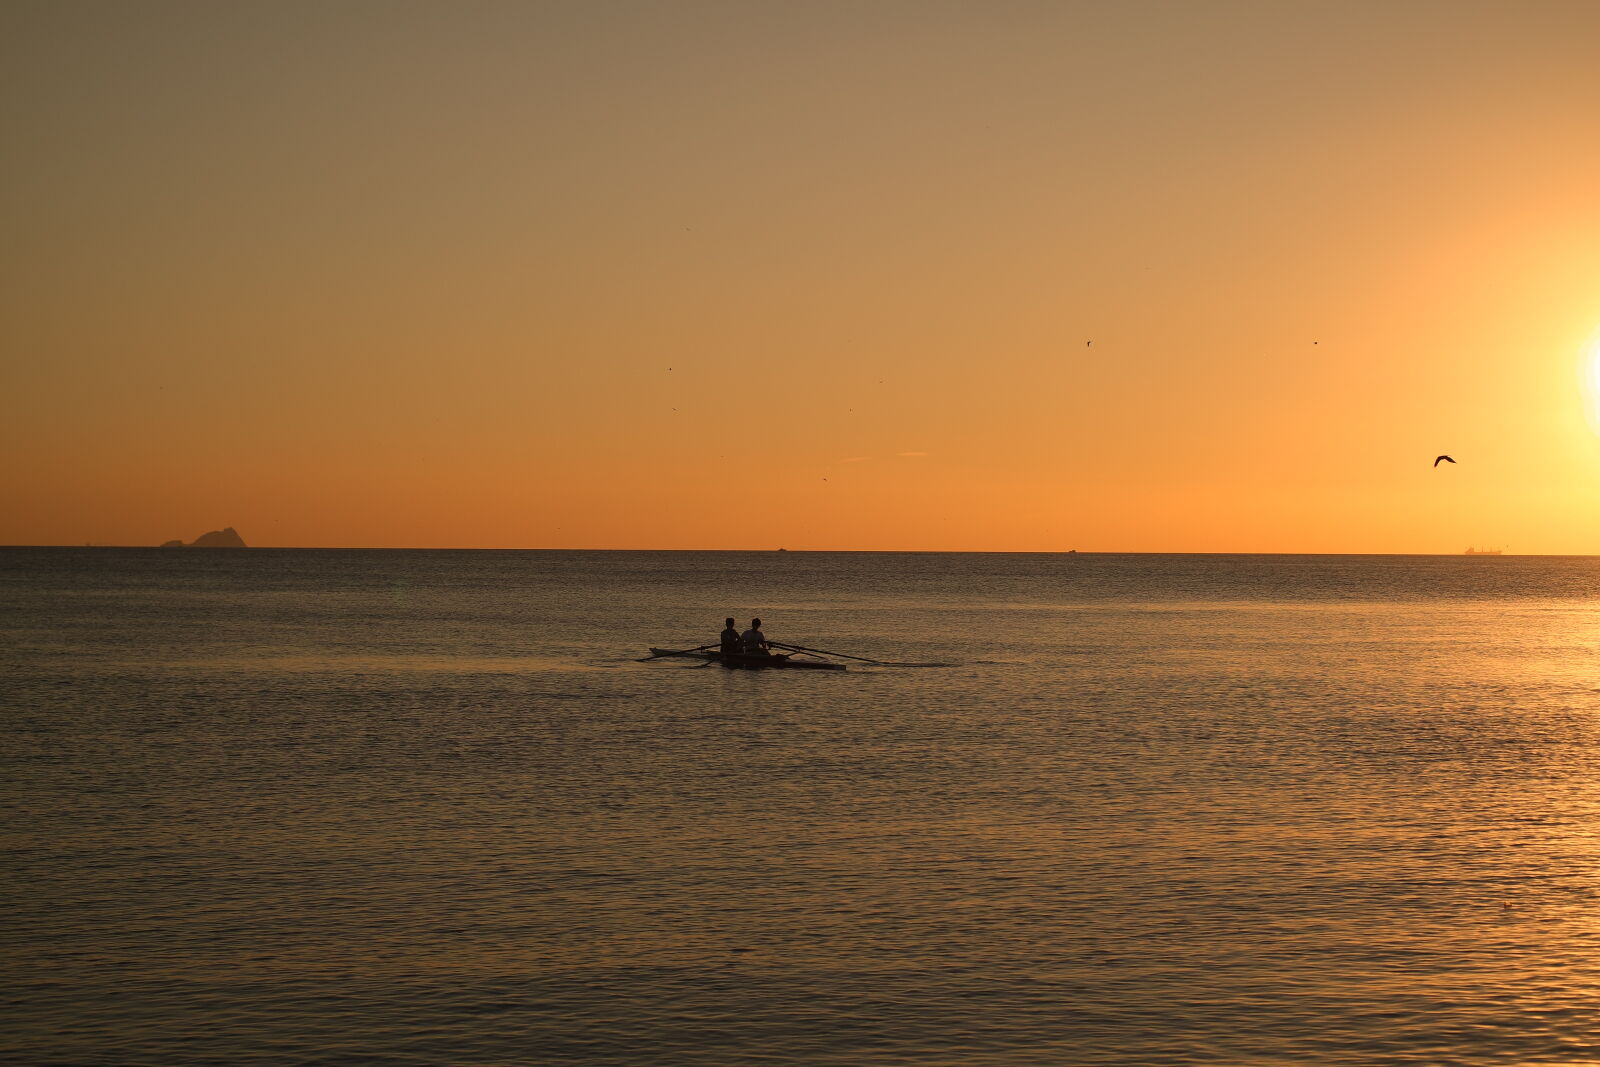 Samsung NX3000 sample photo. Sea, sunset, sun, boat photography